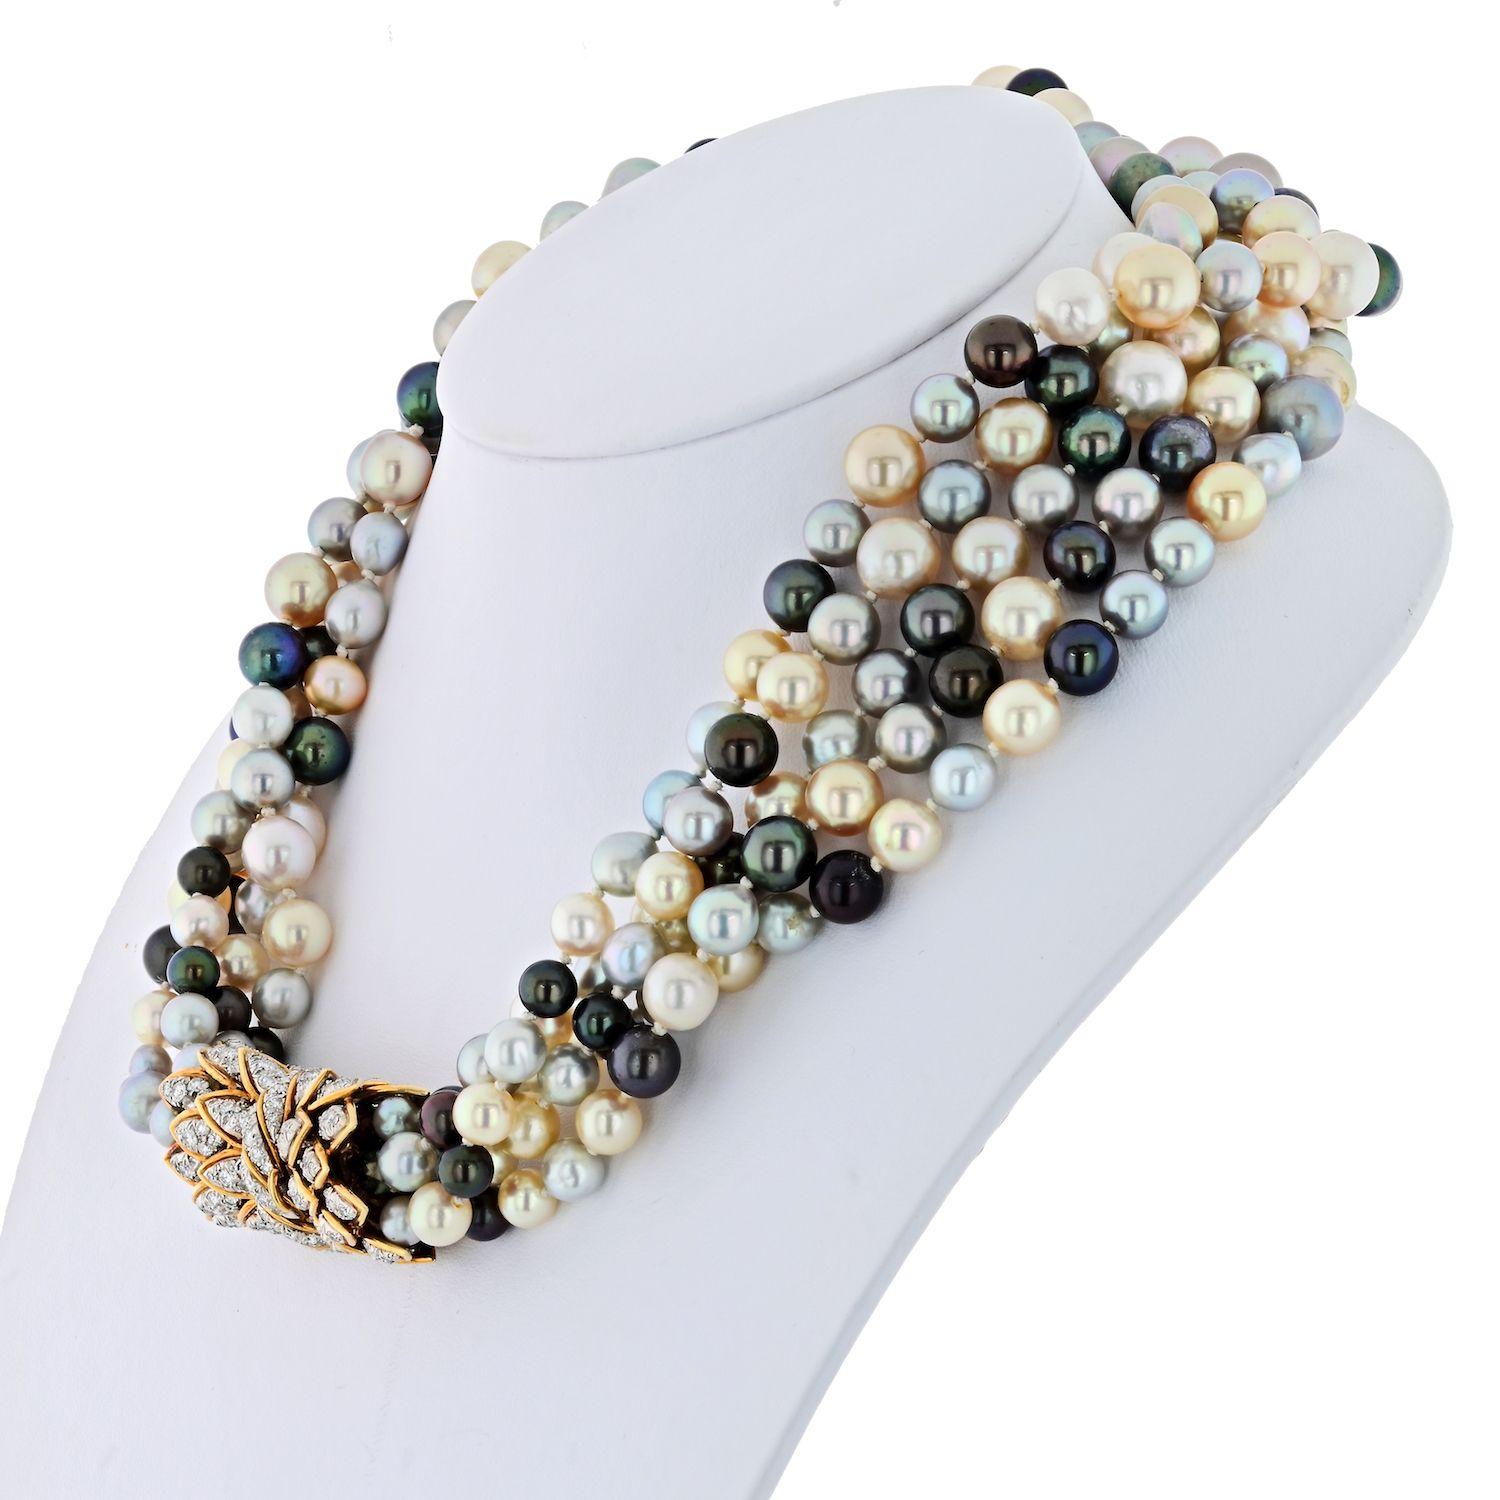 Ce superbe collier de perles à cinq brins de David Webb est une véritable pièce d'apparat. Mesurant 17 pouces de long, les brins sont ornés de perles de 8 à 10 mm de diamètre. 

Le collier est complété par un fermoir en or jaune et platine, orné de